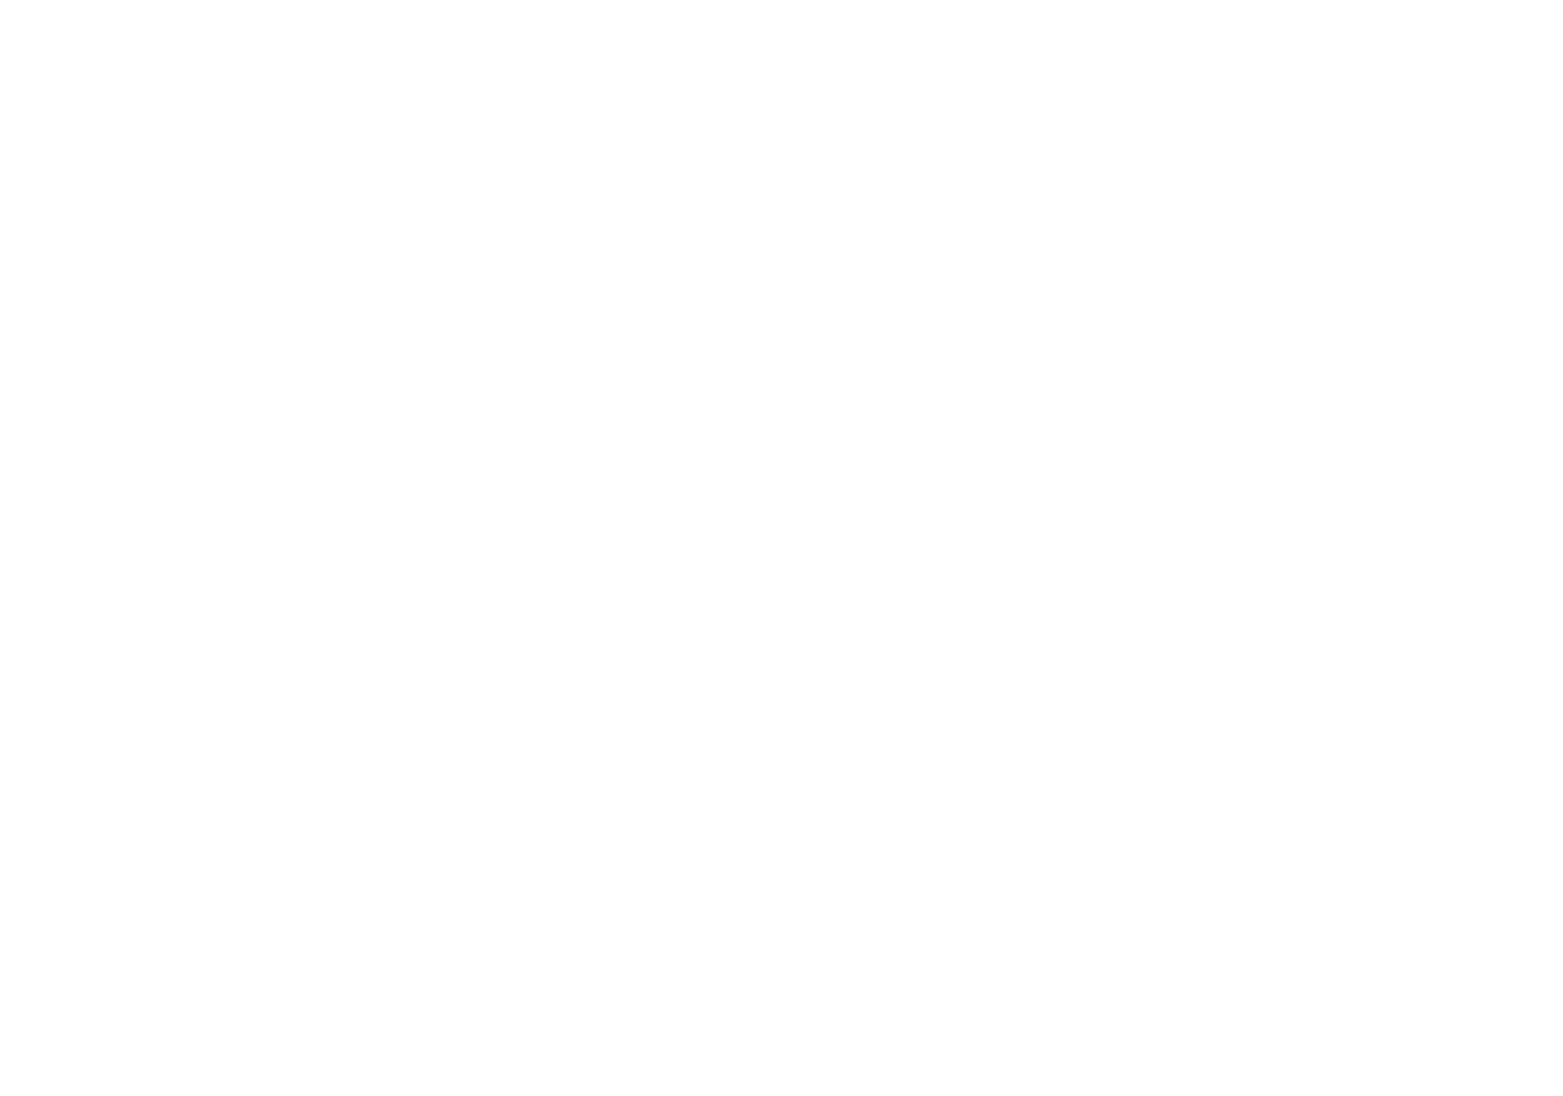 Logo C'MAFOR Former et accompagner : notre mission, votre réussite